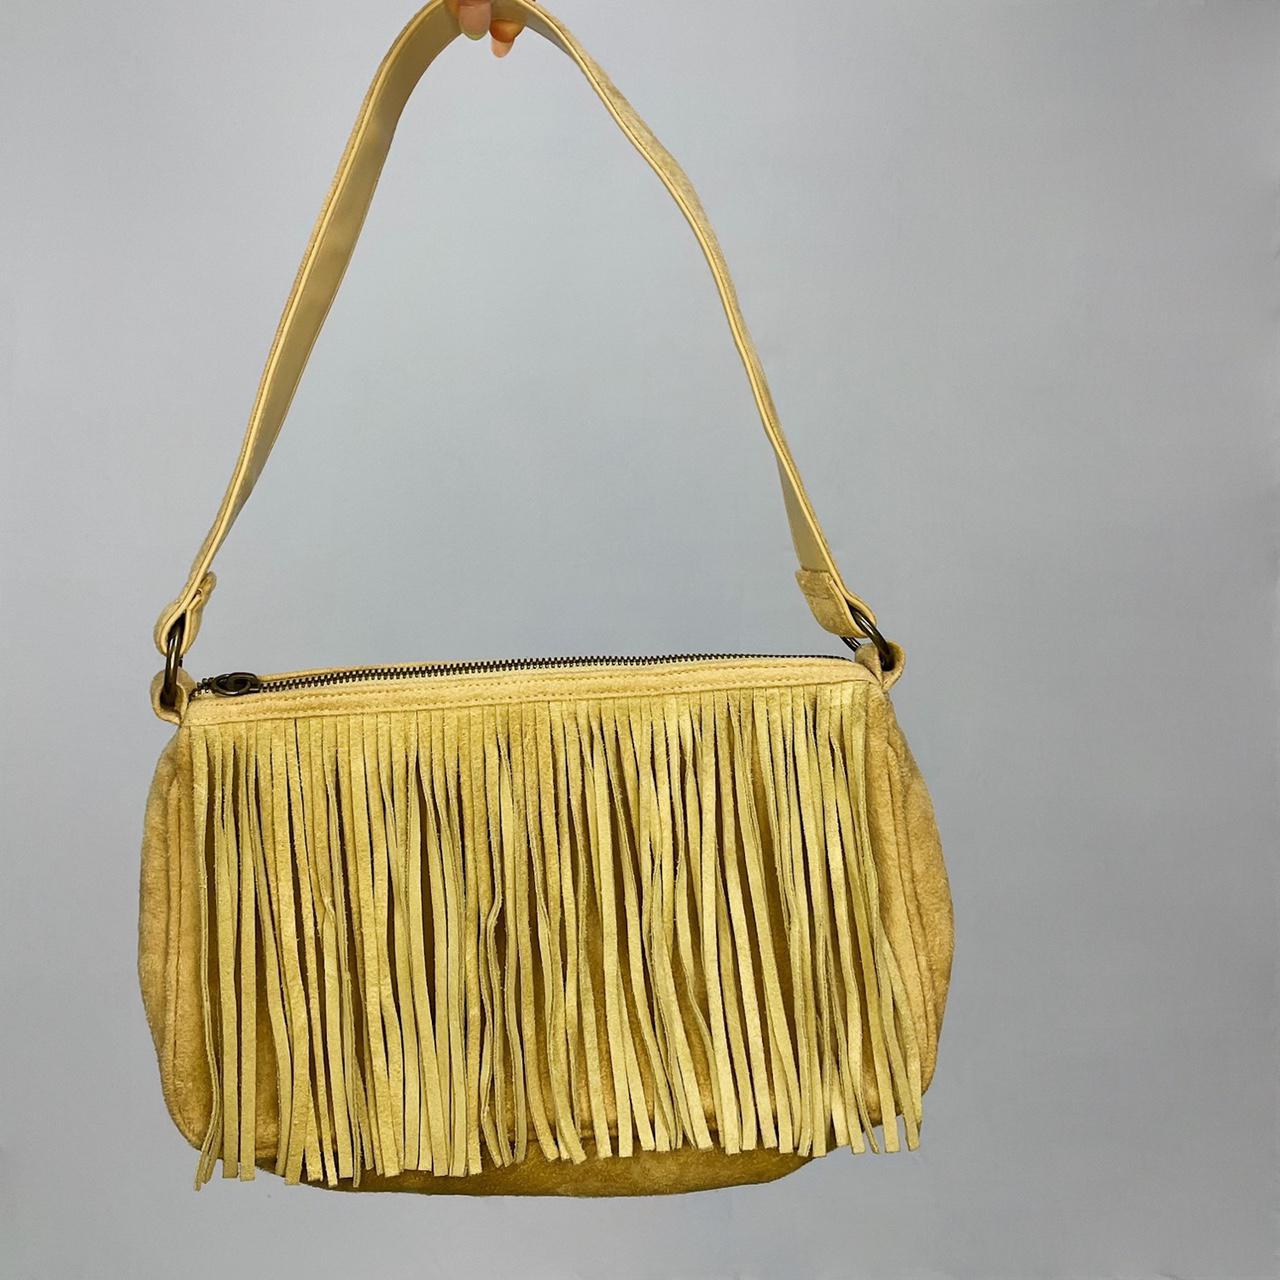 Product Image 1 - vintage fringe bag ✨

this bag